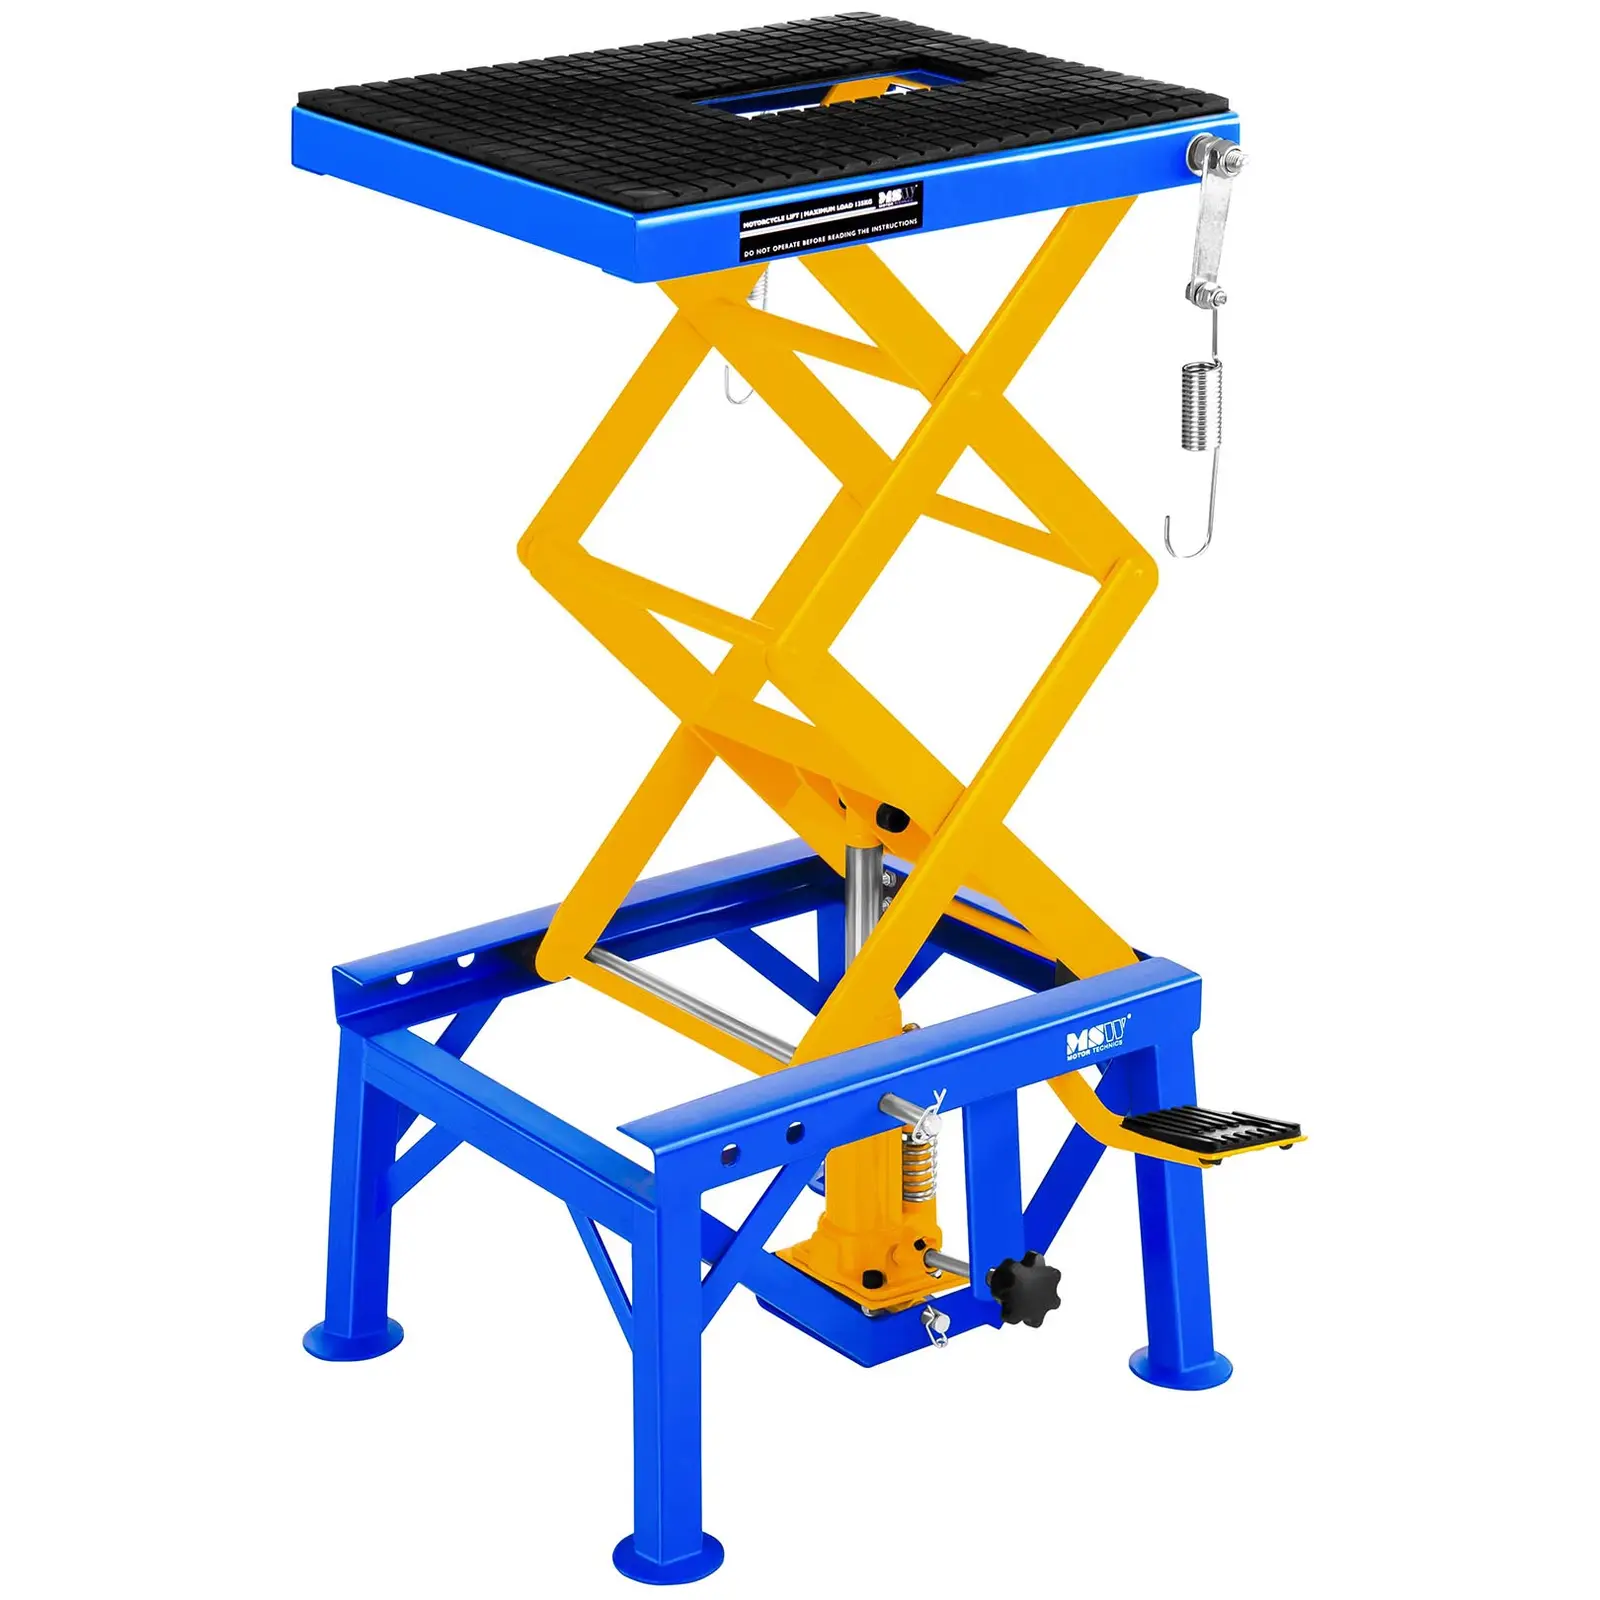 Mobilni podizni stol - 135 kg